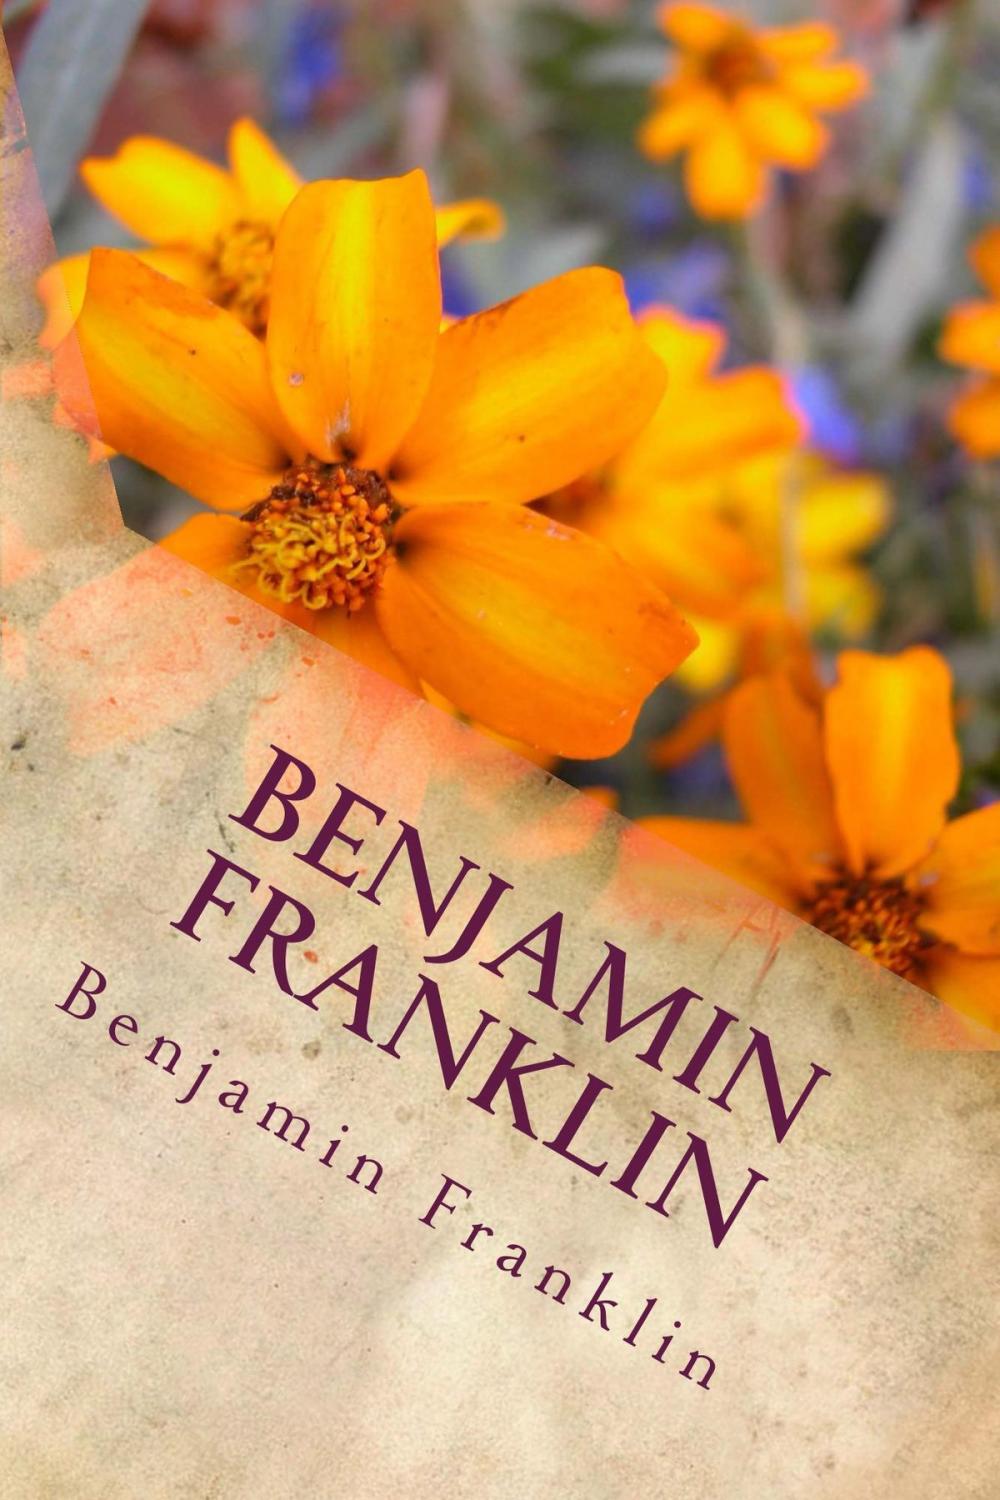 Big bigCover of Benjamin Franklin